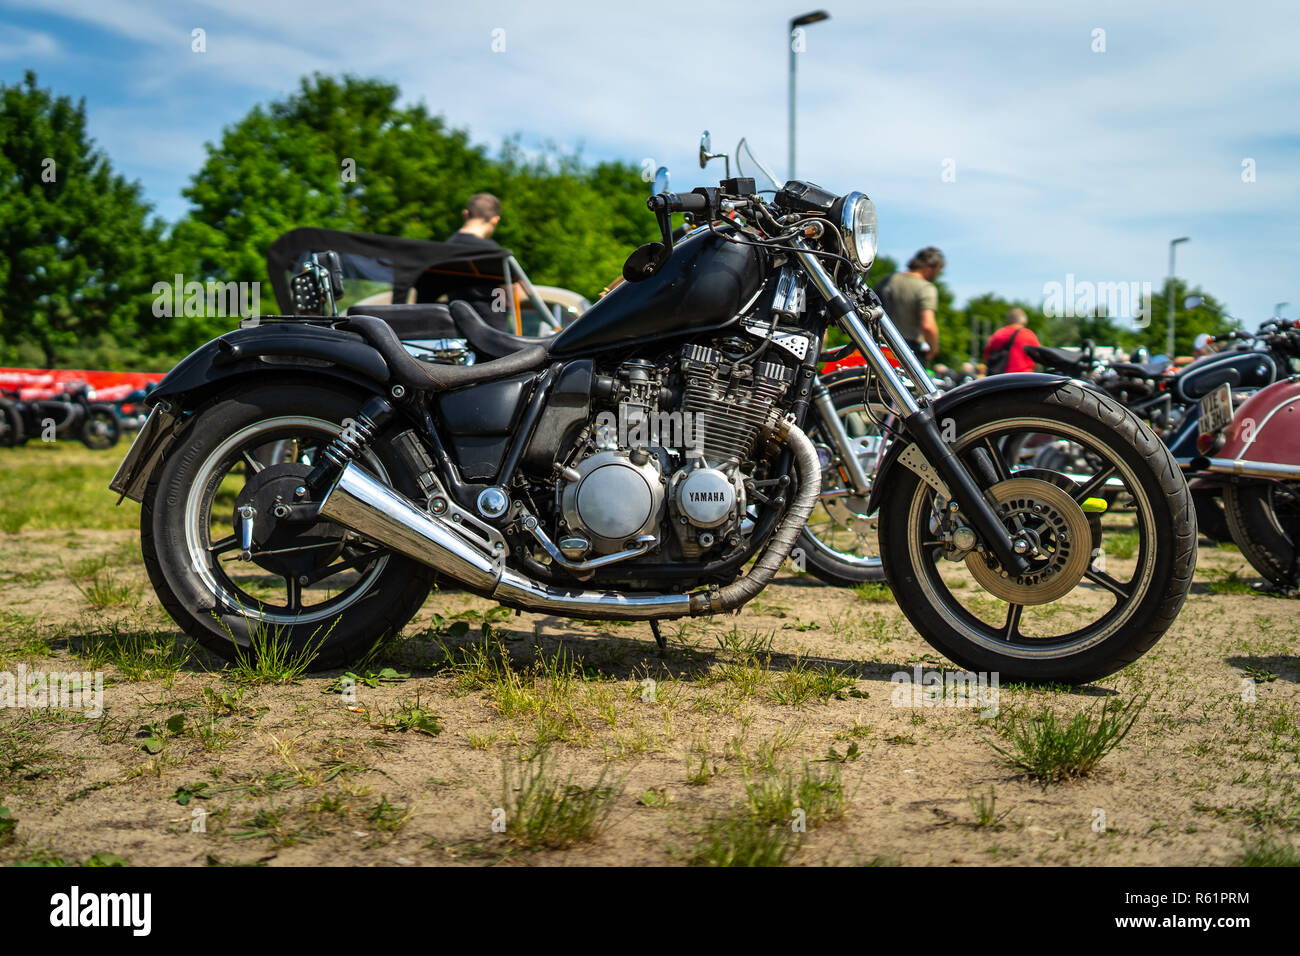 PAAREN IM GLIEN, Deutschland - 19. MAI 2018: Motorrad Yamaha XVS 650 Drag Star. Oldtimer-show 2018 sterben. Stockfoto